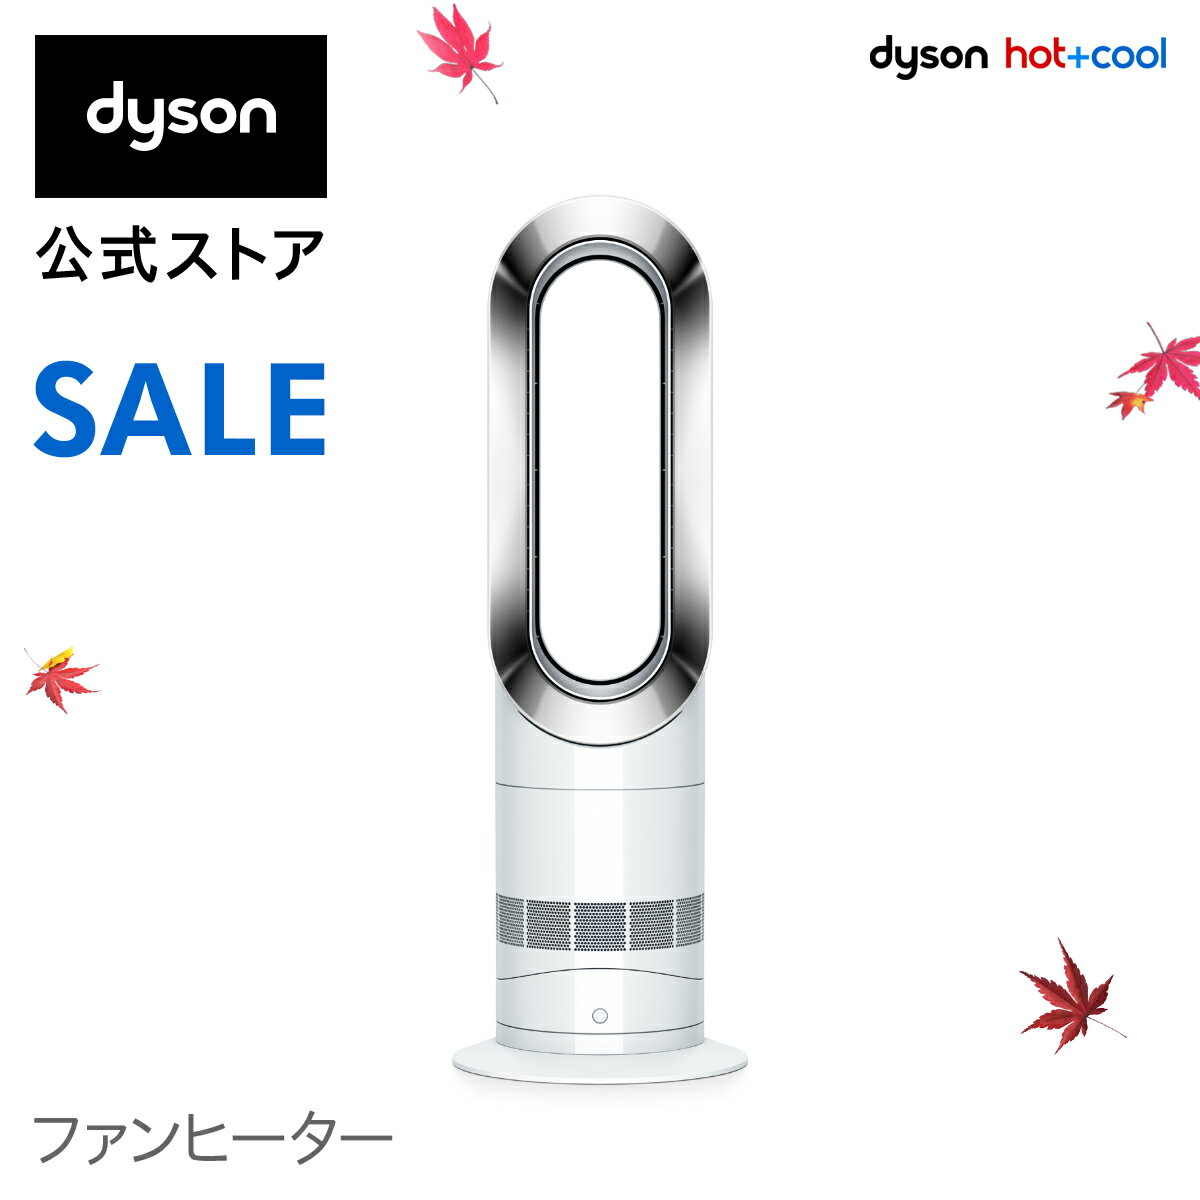 【楽天】29日 00:00-30日 11:59まで ダイソン Dyson Hot+Cool AM09WN ファンヒーター 扇風機 暖房 ホワイト/ニッケルの売れ筋人気ランキング商品